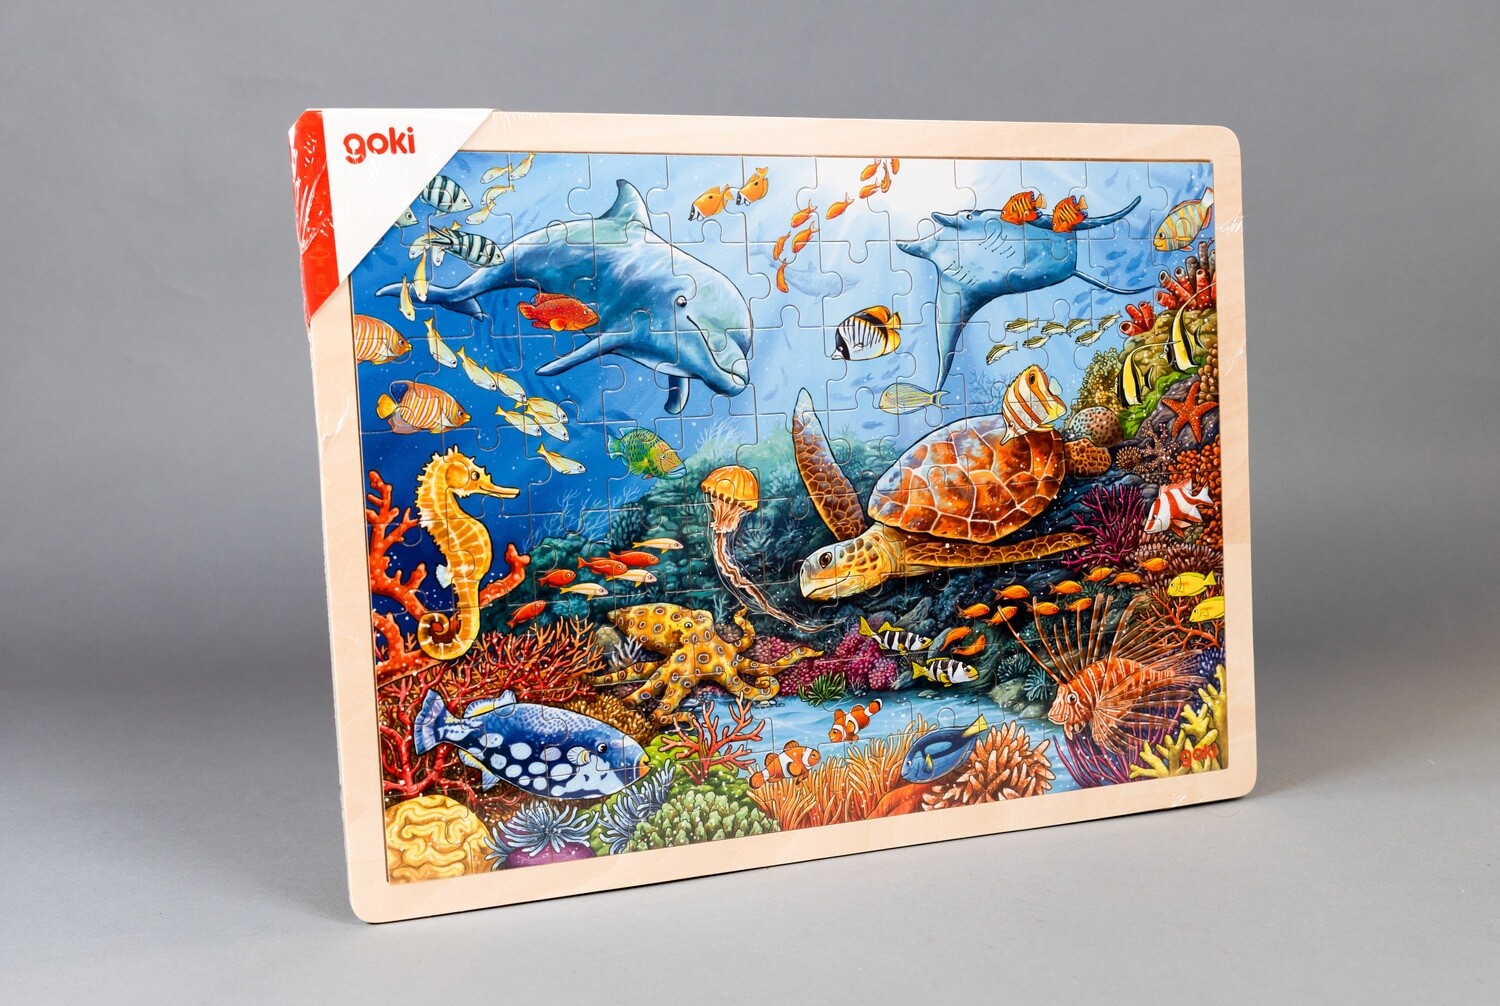 GOKI Holz-Einlegepuzzle "Great Barrier Reef"